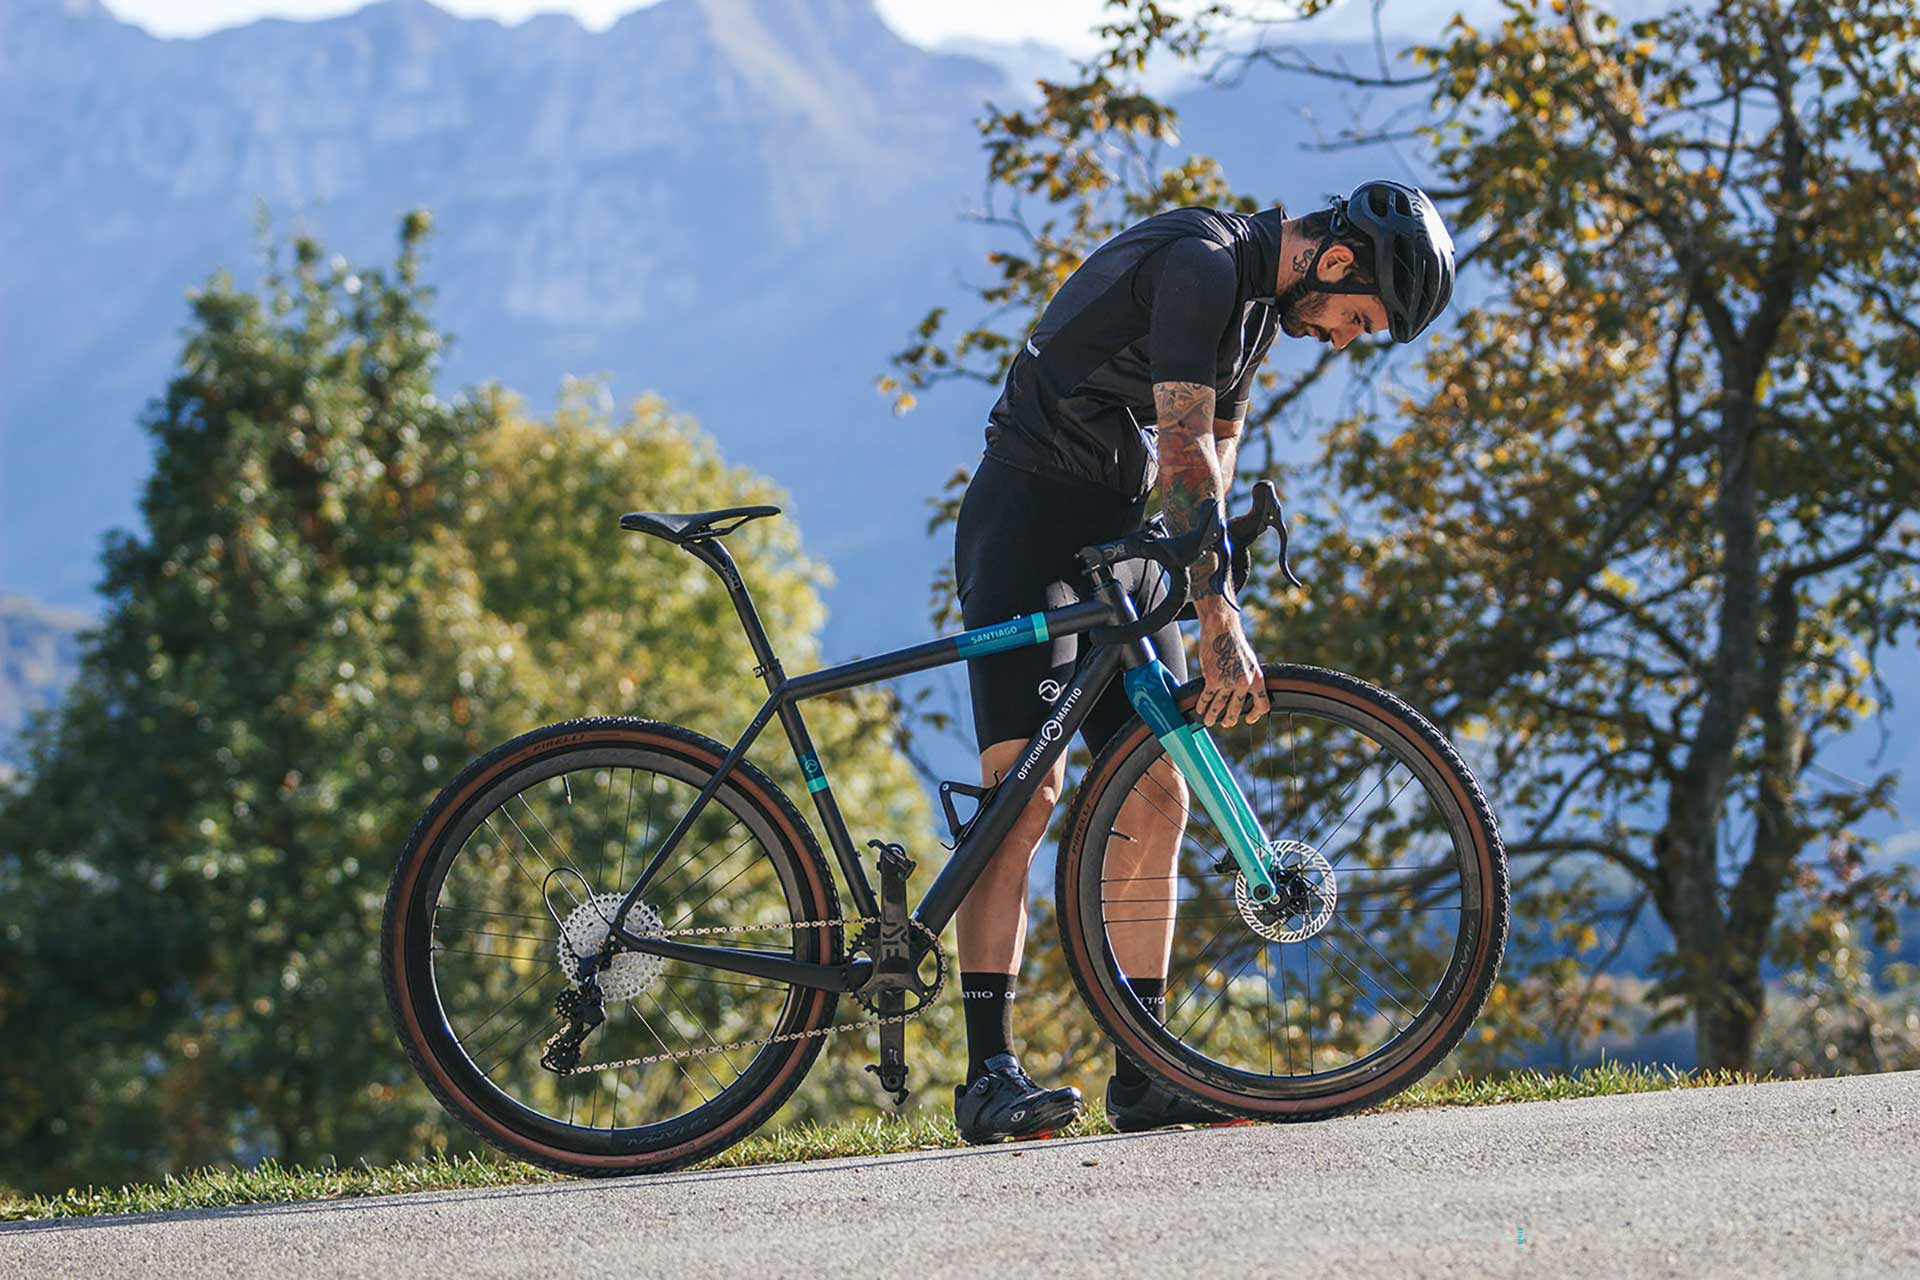 Bicicletta Officine Mattio modello SANTIAGO C colori nero, blu e azzurro, super leggera e maneggevole, in fibra di carbonio produzione made in italy ambientata 01